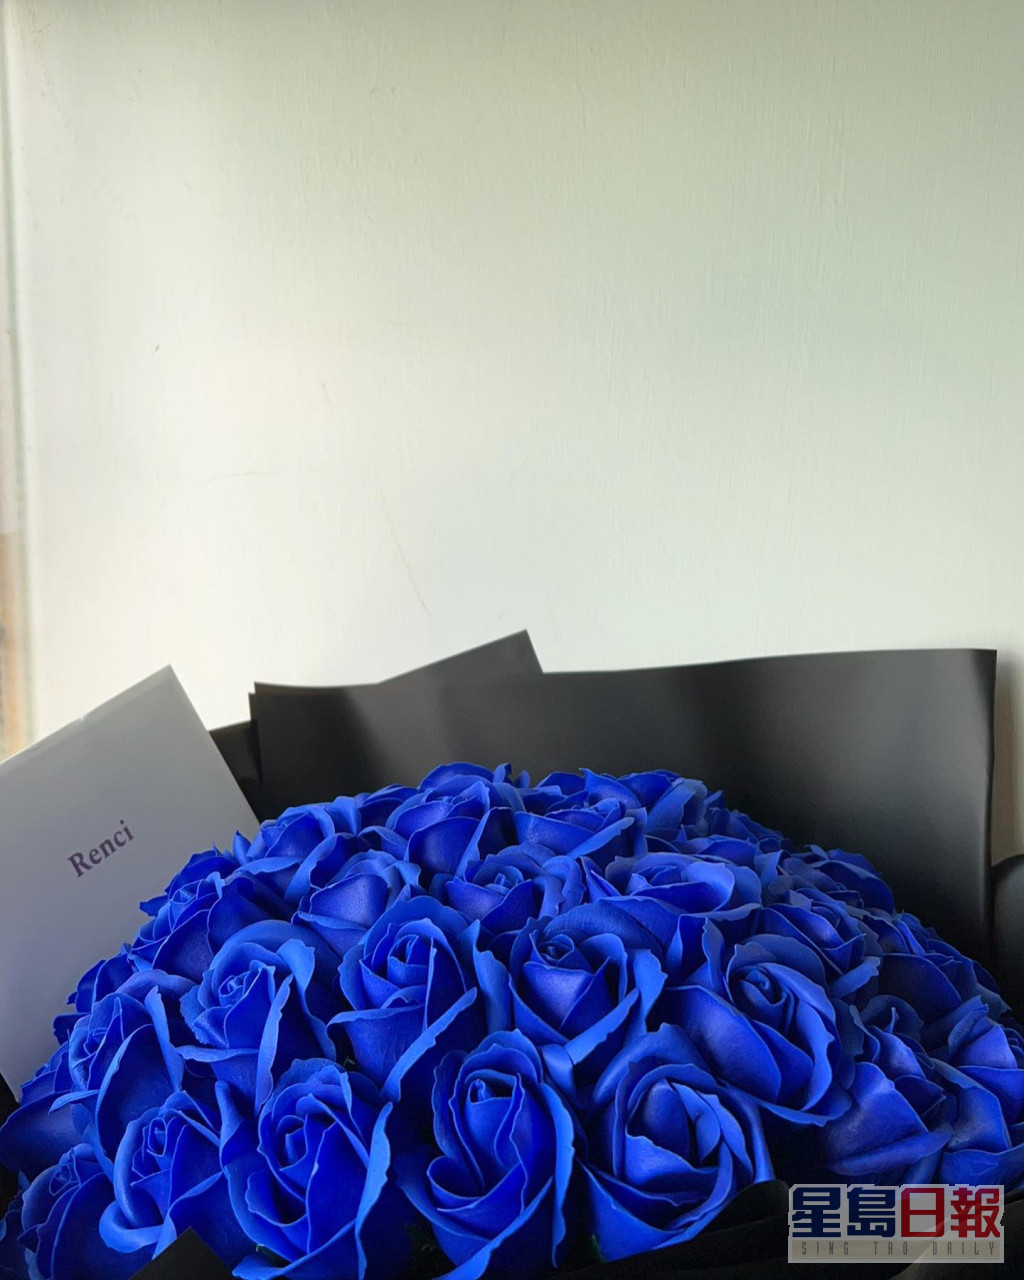 好靓嘅蓝玫瑰。